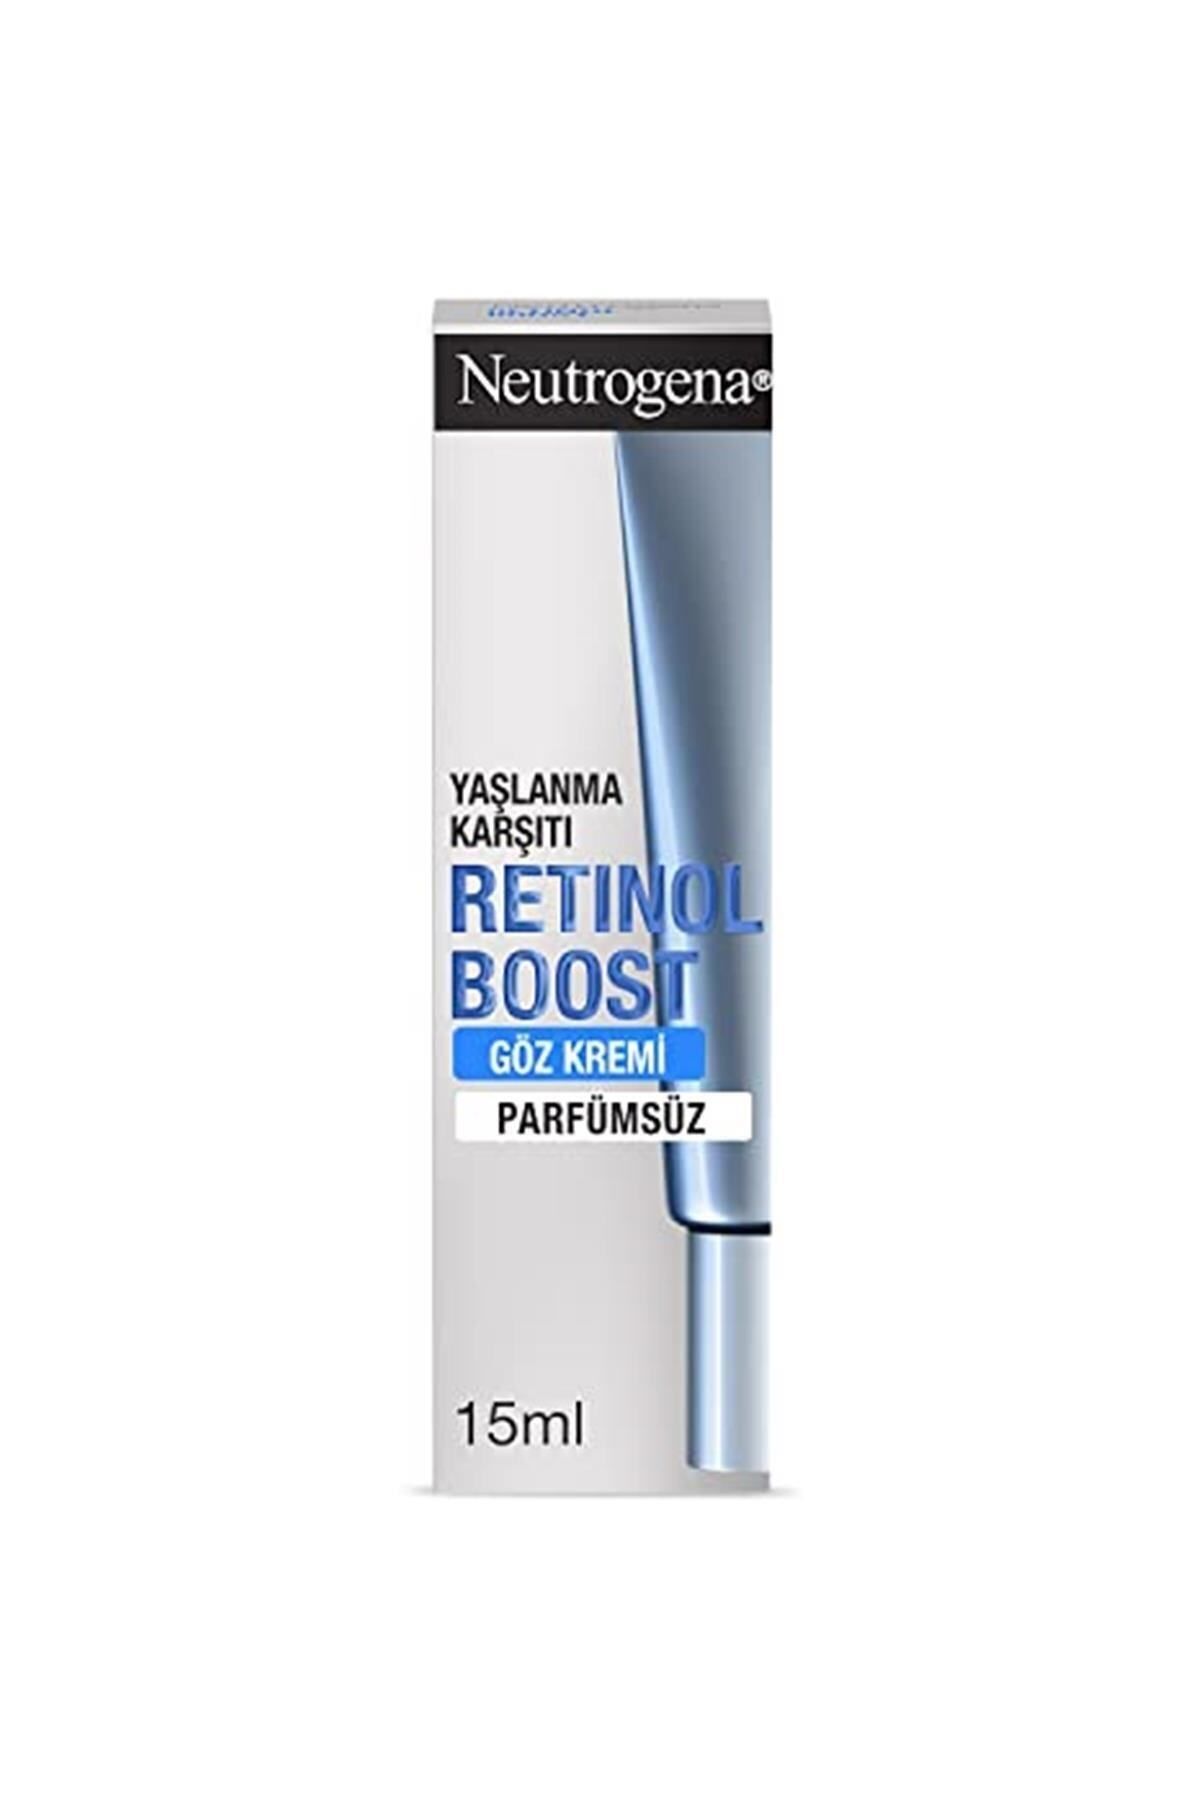 Neutrogena Retinol Boost Kırışıklık ve İnatçı Kaz Ayağı Karşıtı Yenileyici Göz Kremi, 15 ml